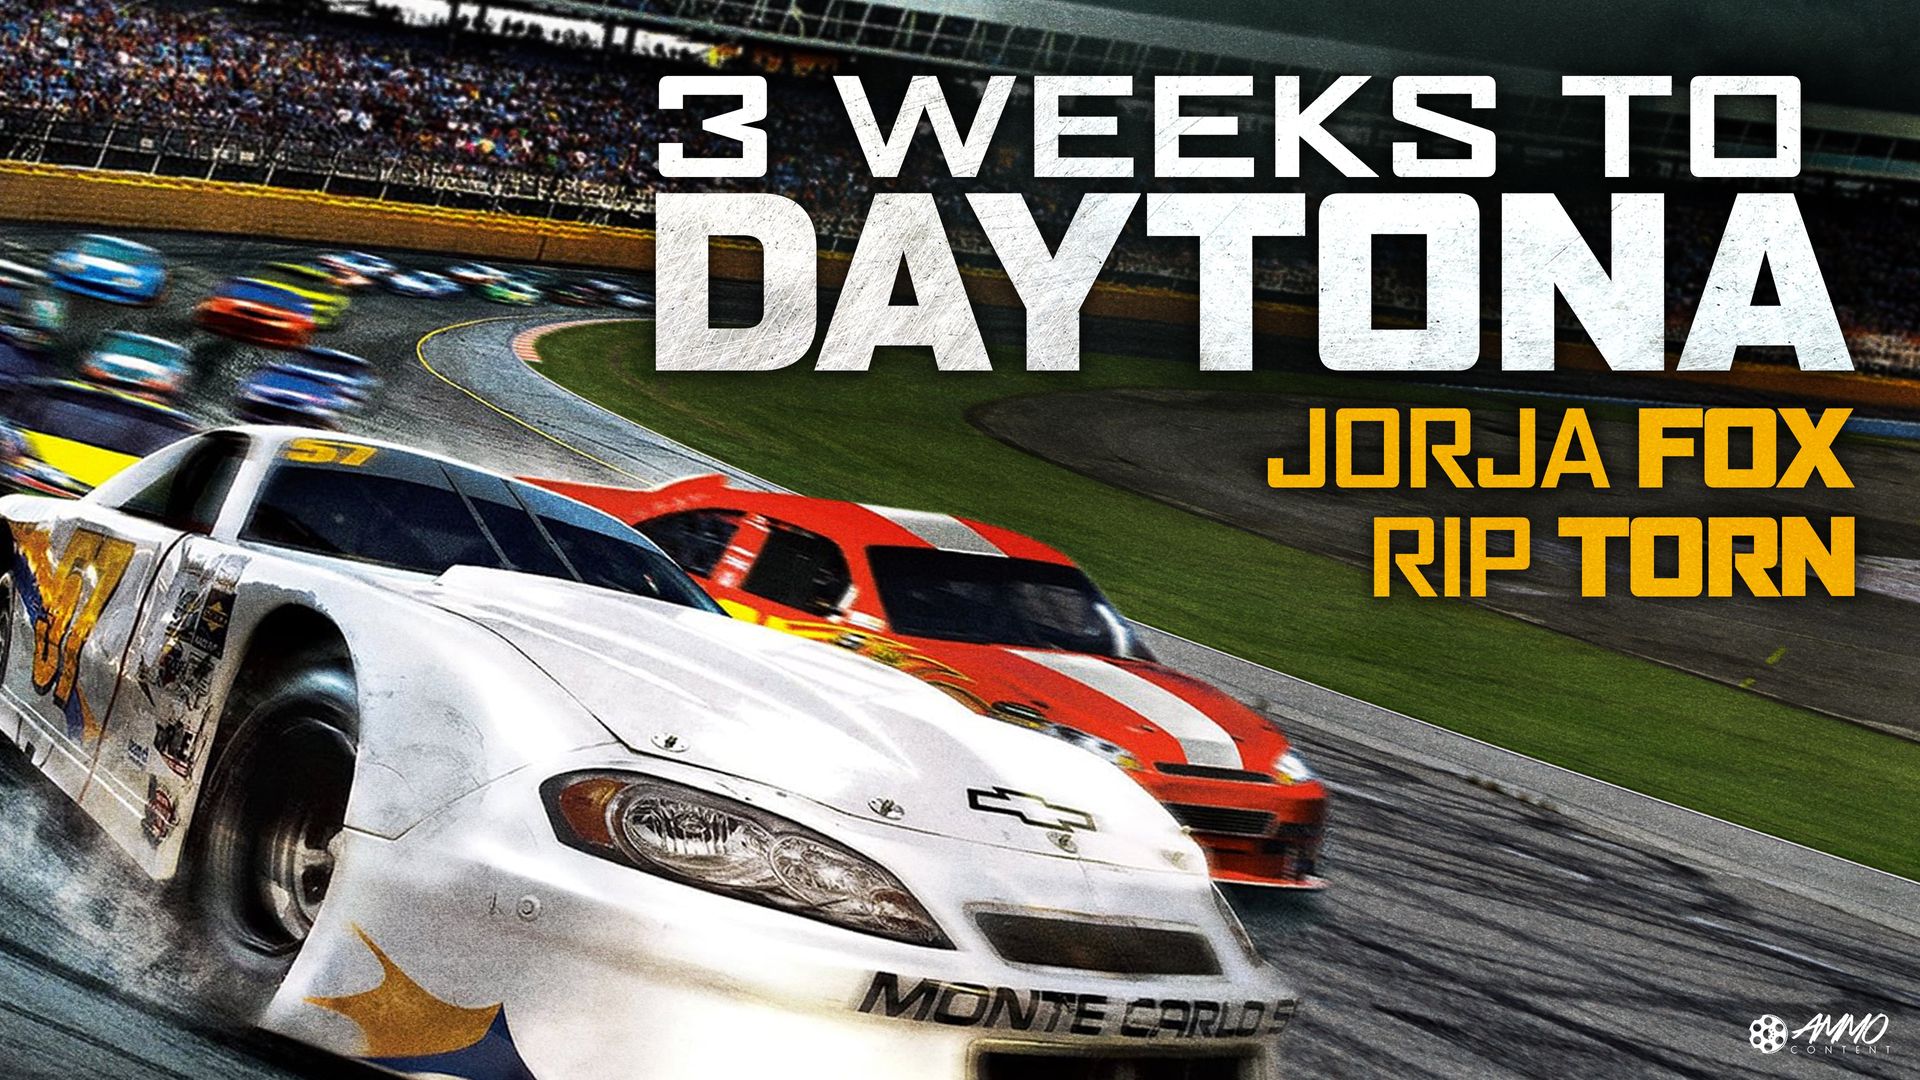 3 Weeks to Daytona Backdrop